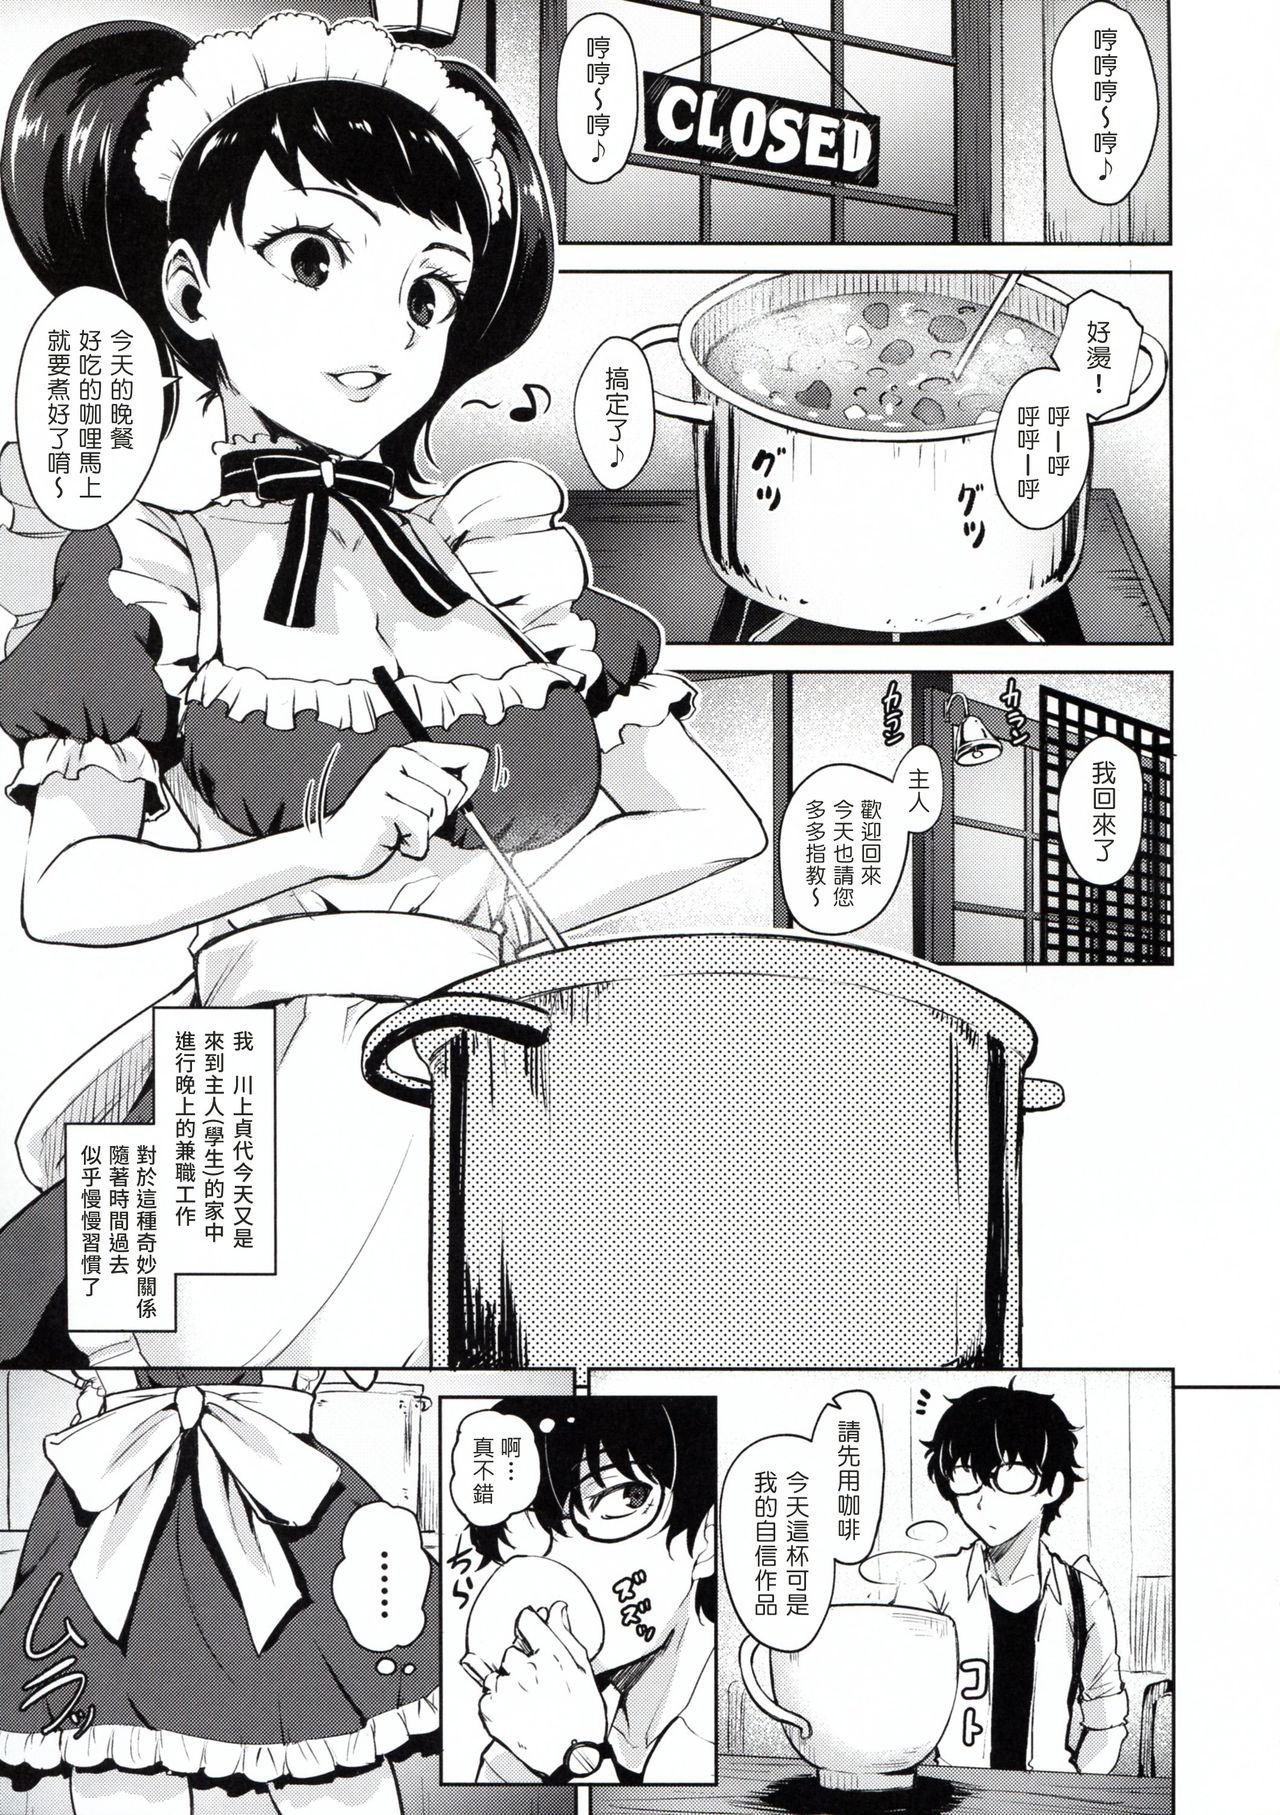 Argenta Kawakami No Maedewa Sessei Dekinai Setsu - Persona 5 Bro - Page 3